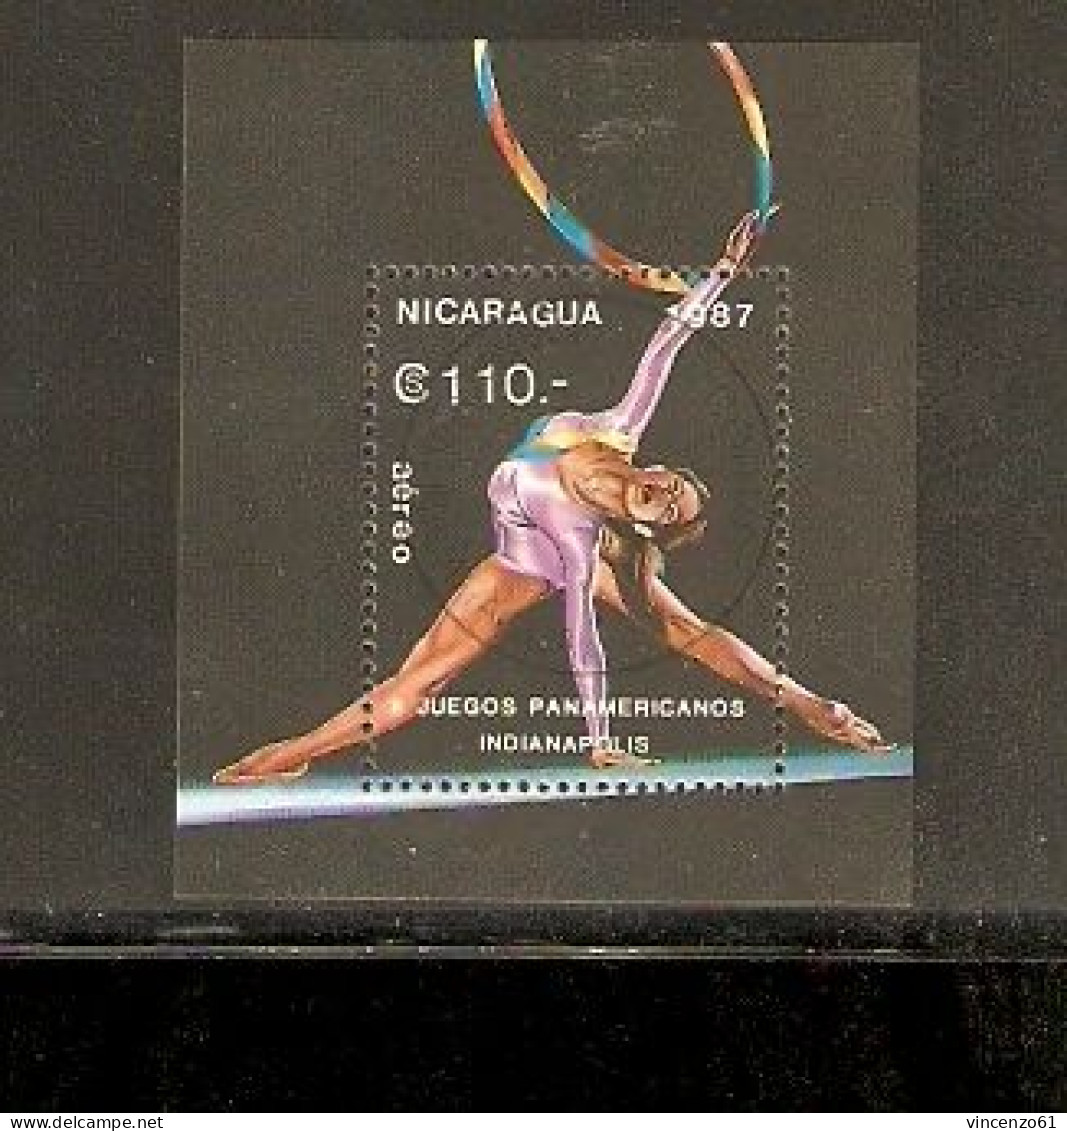 NICARAGUA JUEGOS PANAMERICANOS INDIANAPOLIS 1987 - Gymnastics